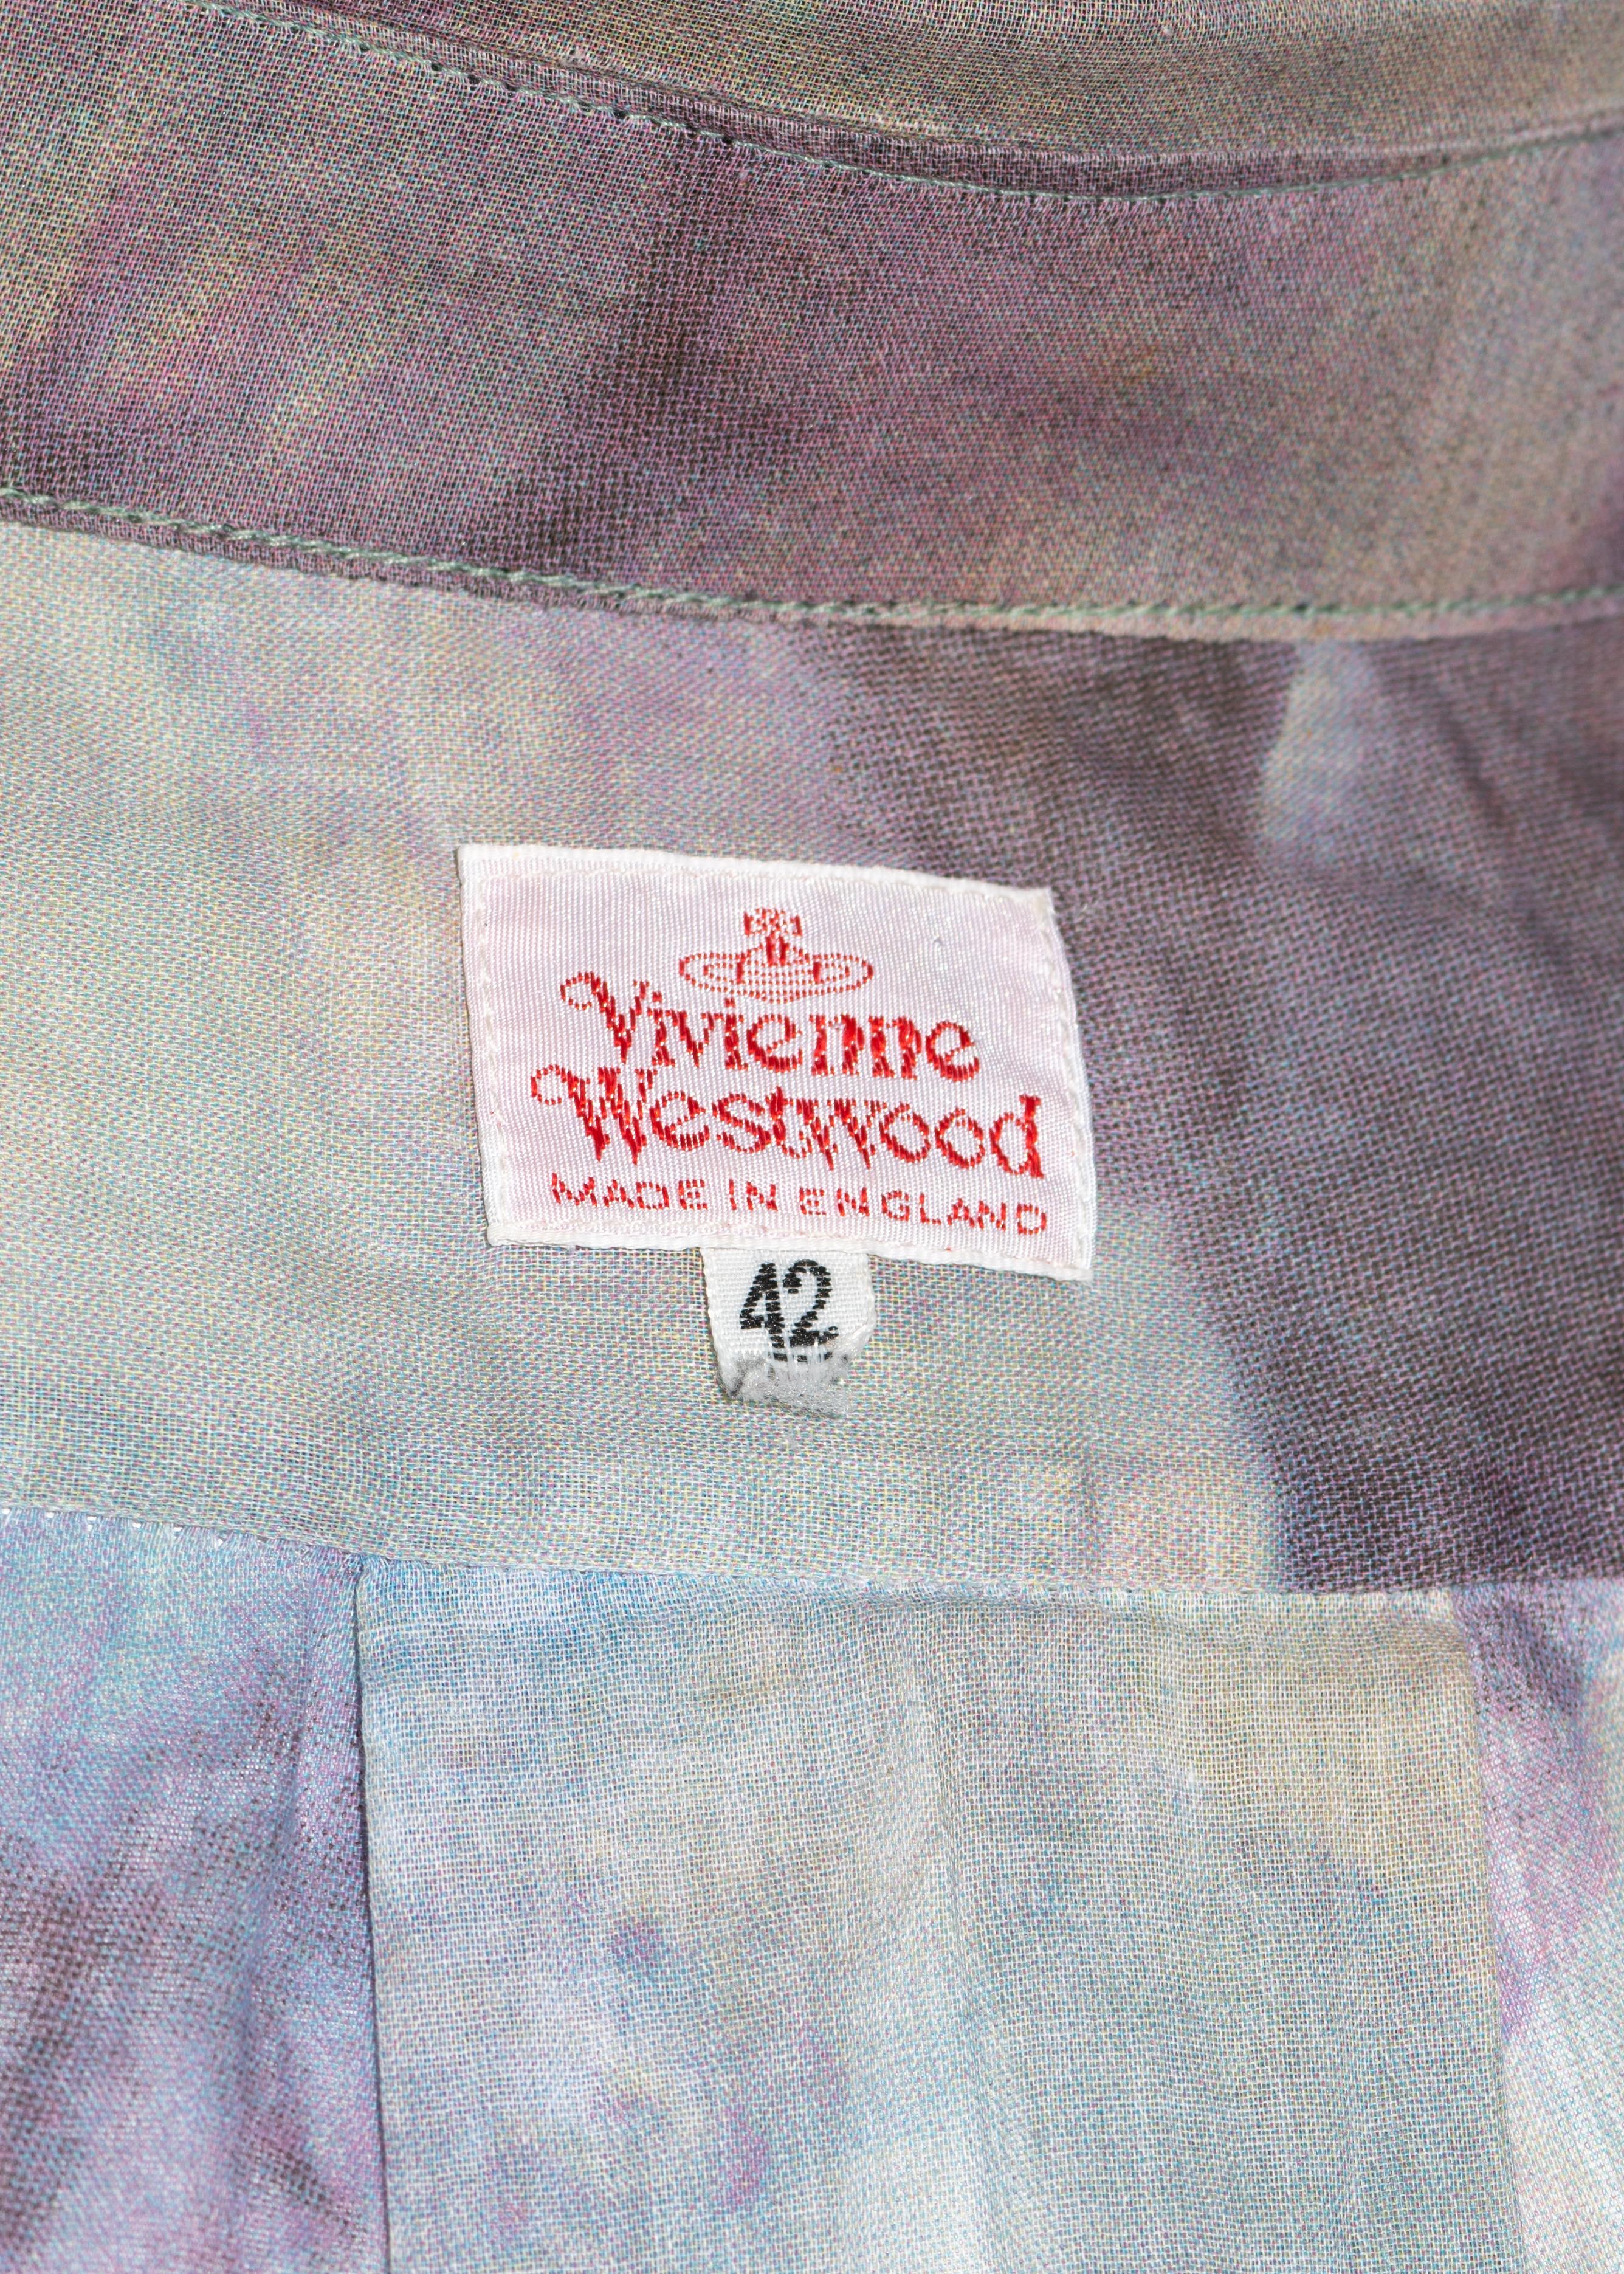 Vivienne Westwood Men's Rococo cupid print cotton shirt, fw 1991 For Sale 1